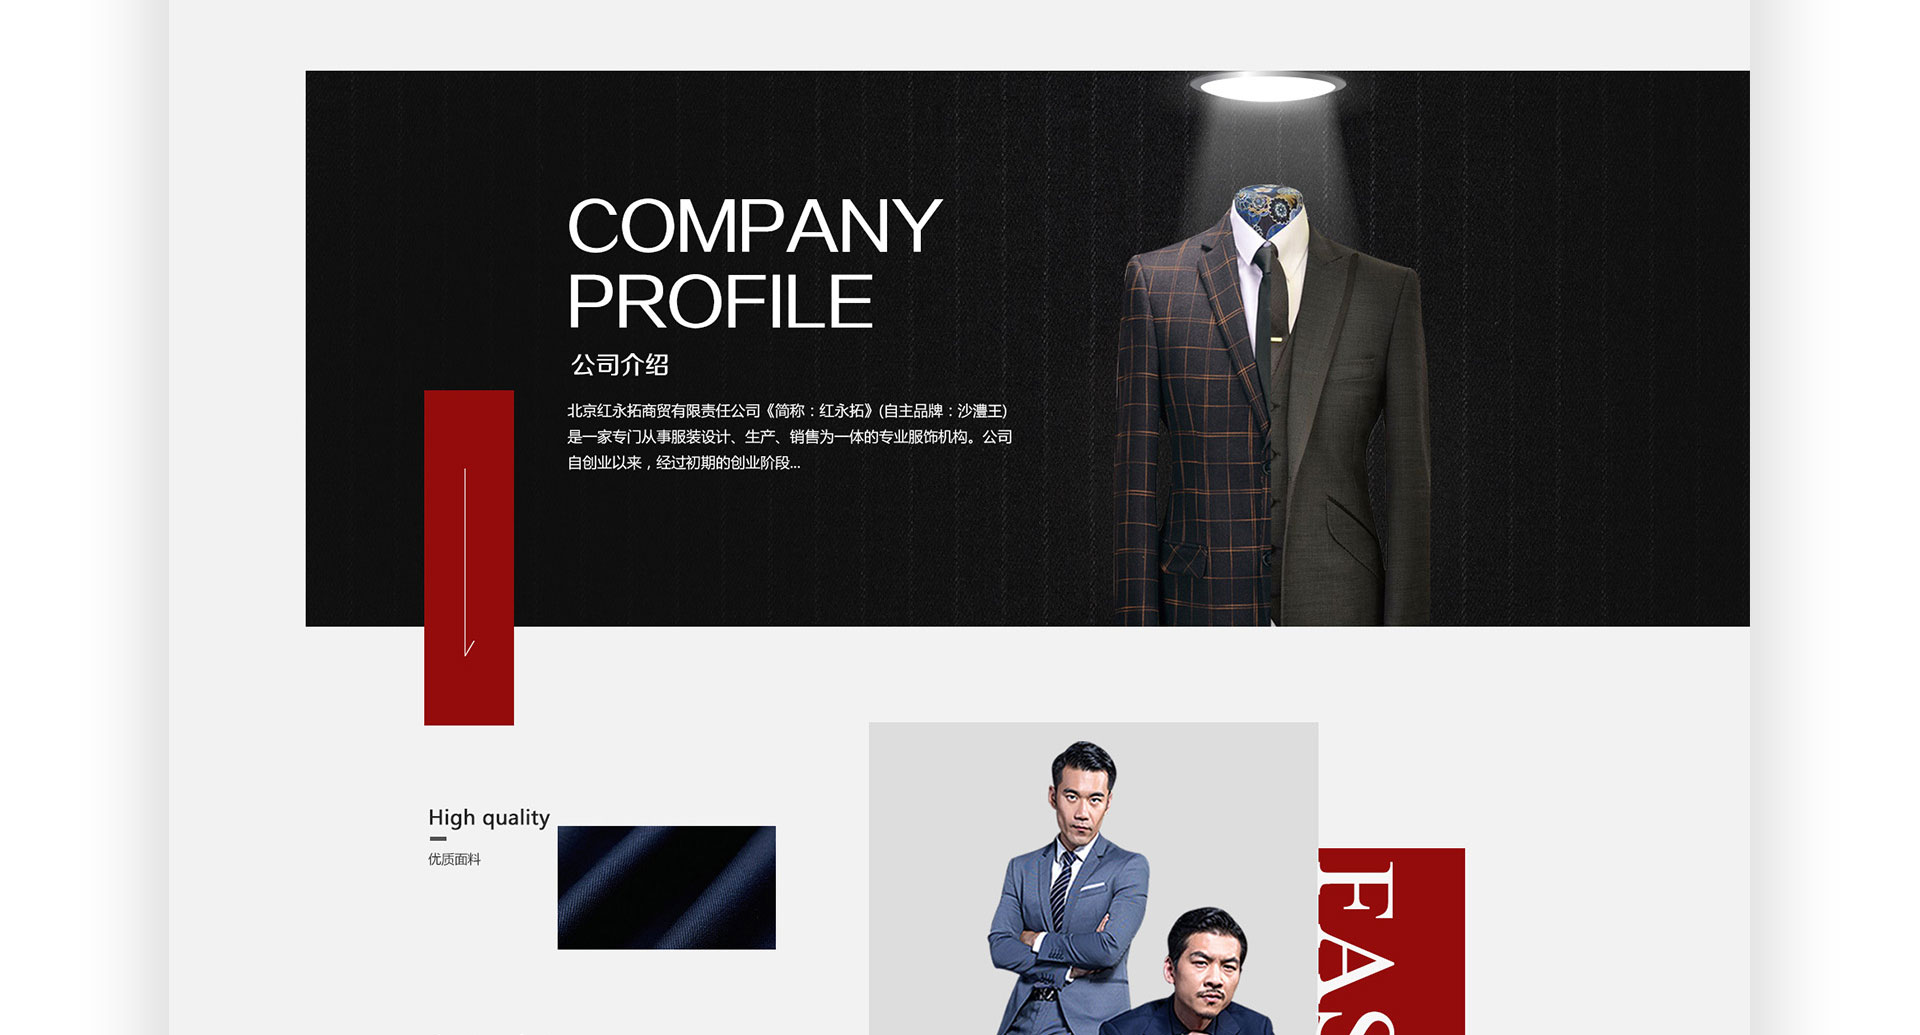 红永拓,服装网站设计,网站制作,北京网站建设